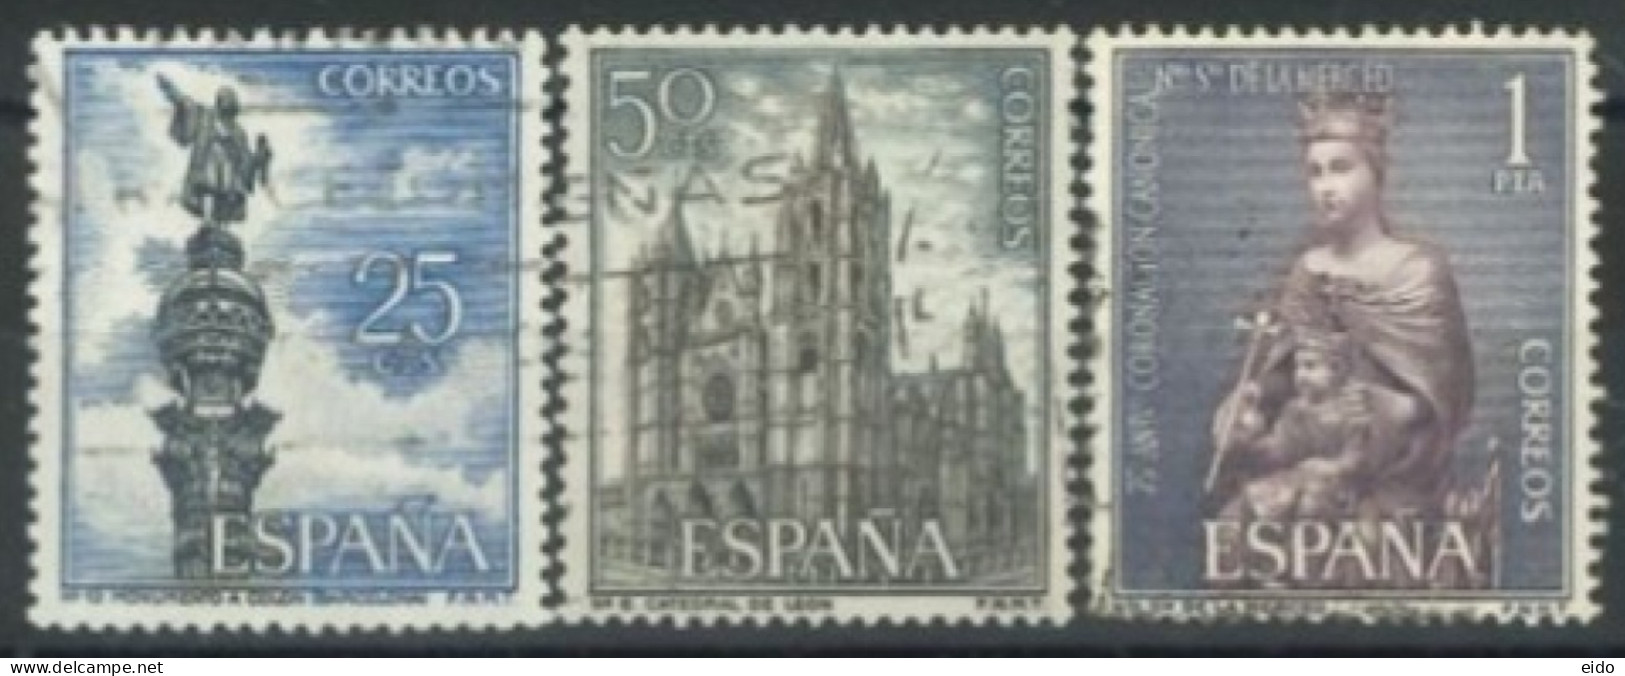 SPAIN, 1963/65, COLUMBUS MONUMENT, LEON CATHEDRAL & ST. DE LA MERCED STAMPS SET OF 3, # 1280,1201,& 1205, USED. - Oblitérés